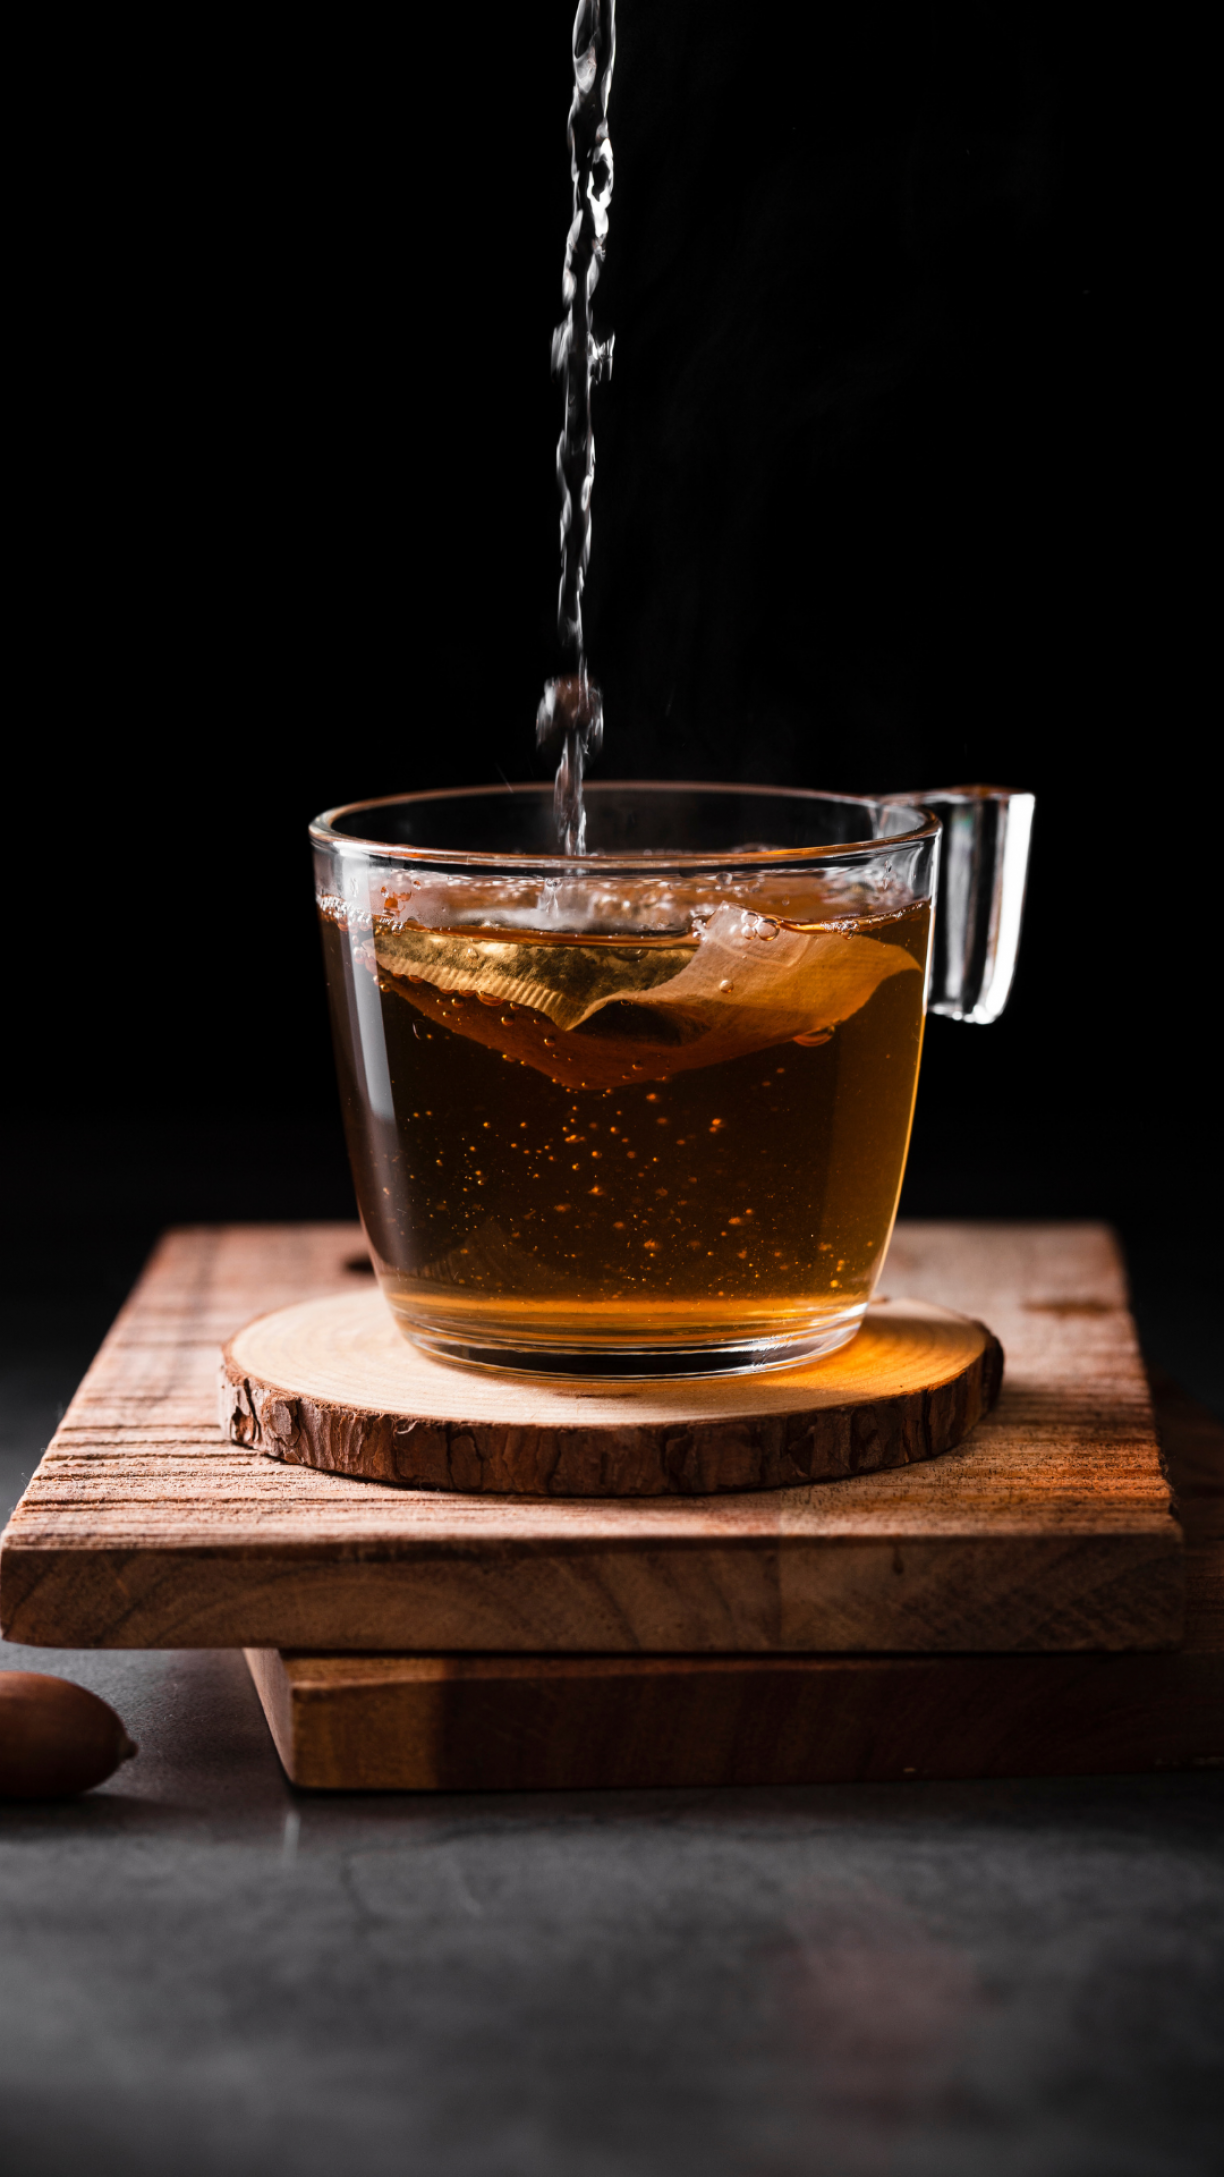 Cardo-mariano: o que é, para que serve e como fazer o chá - Tua Saúde